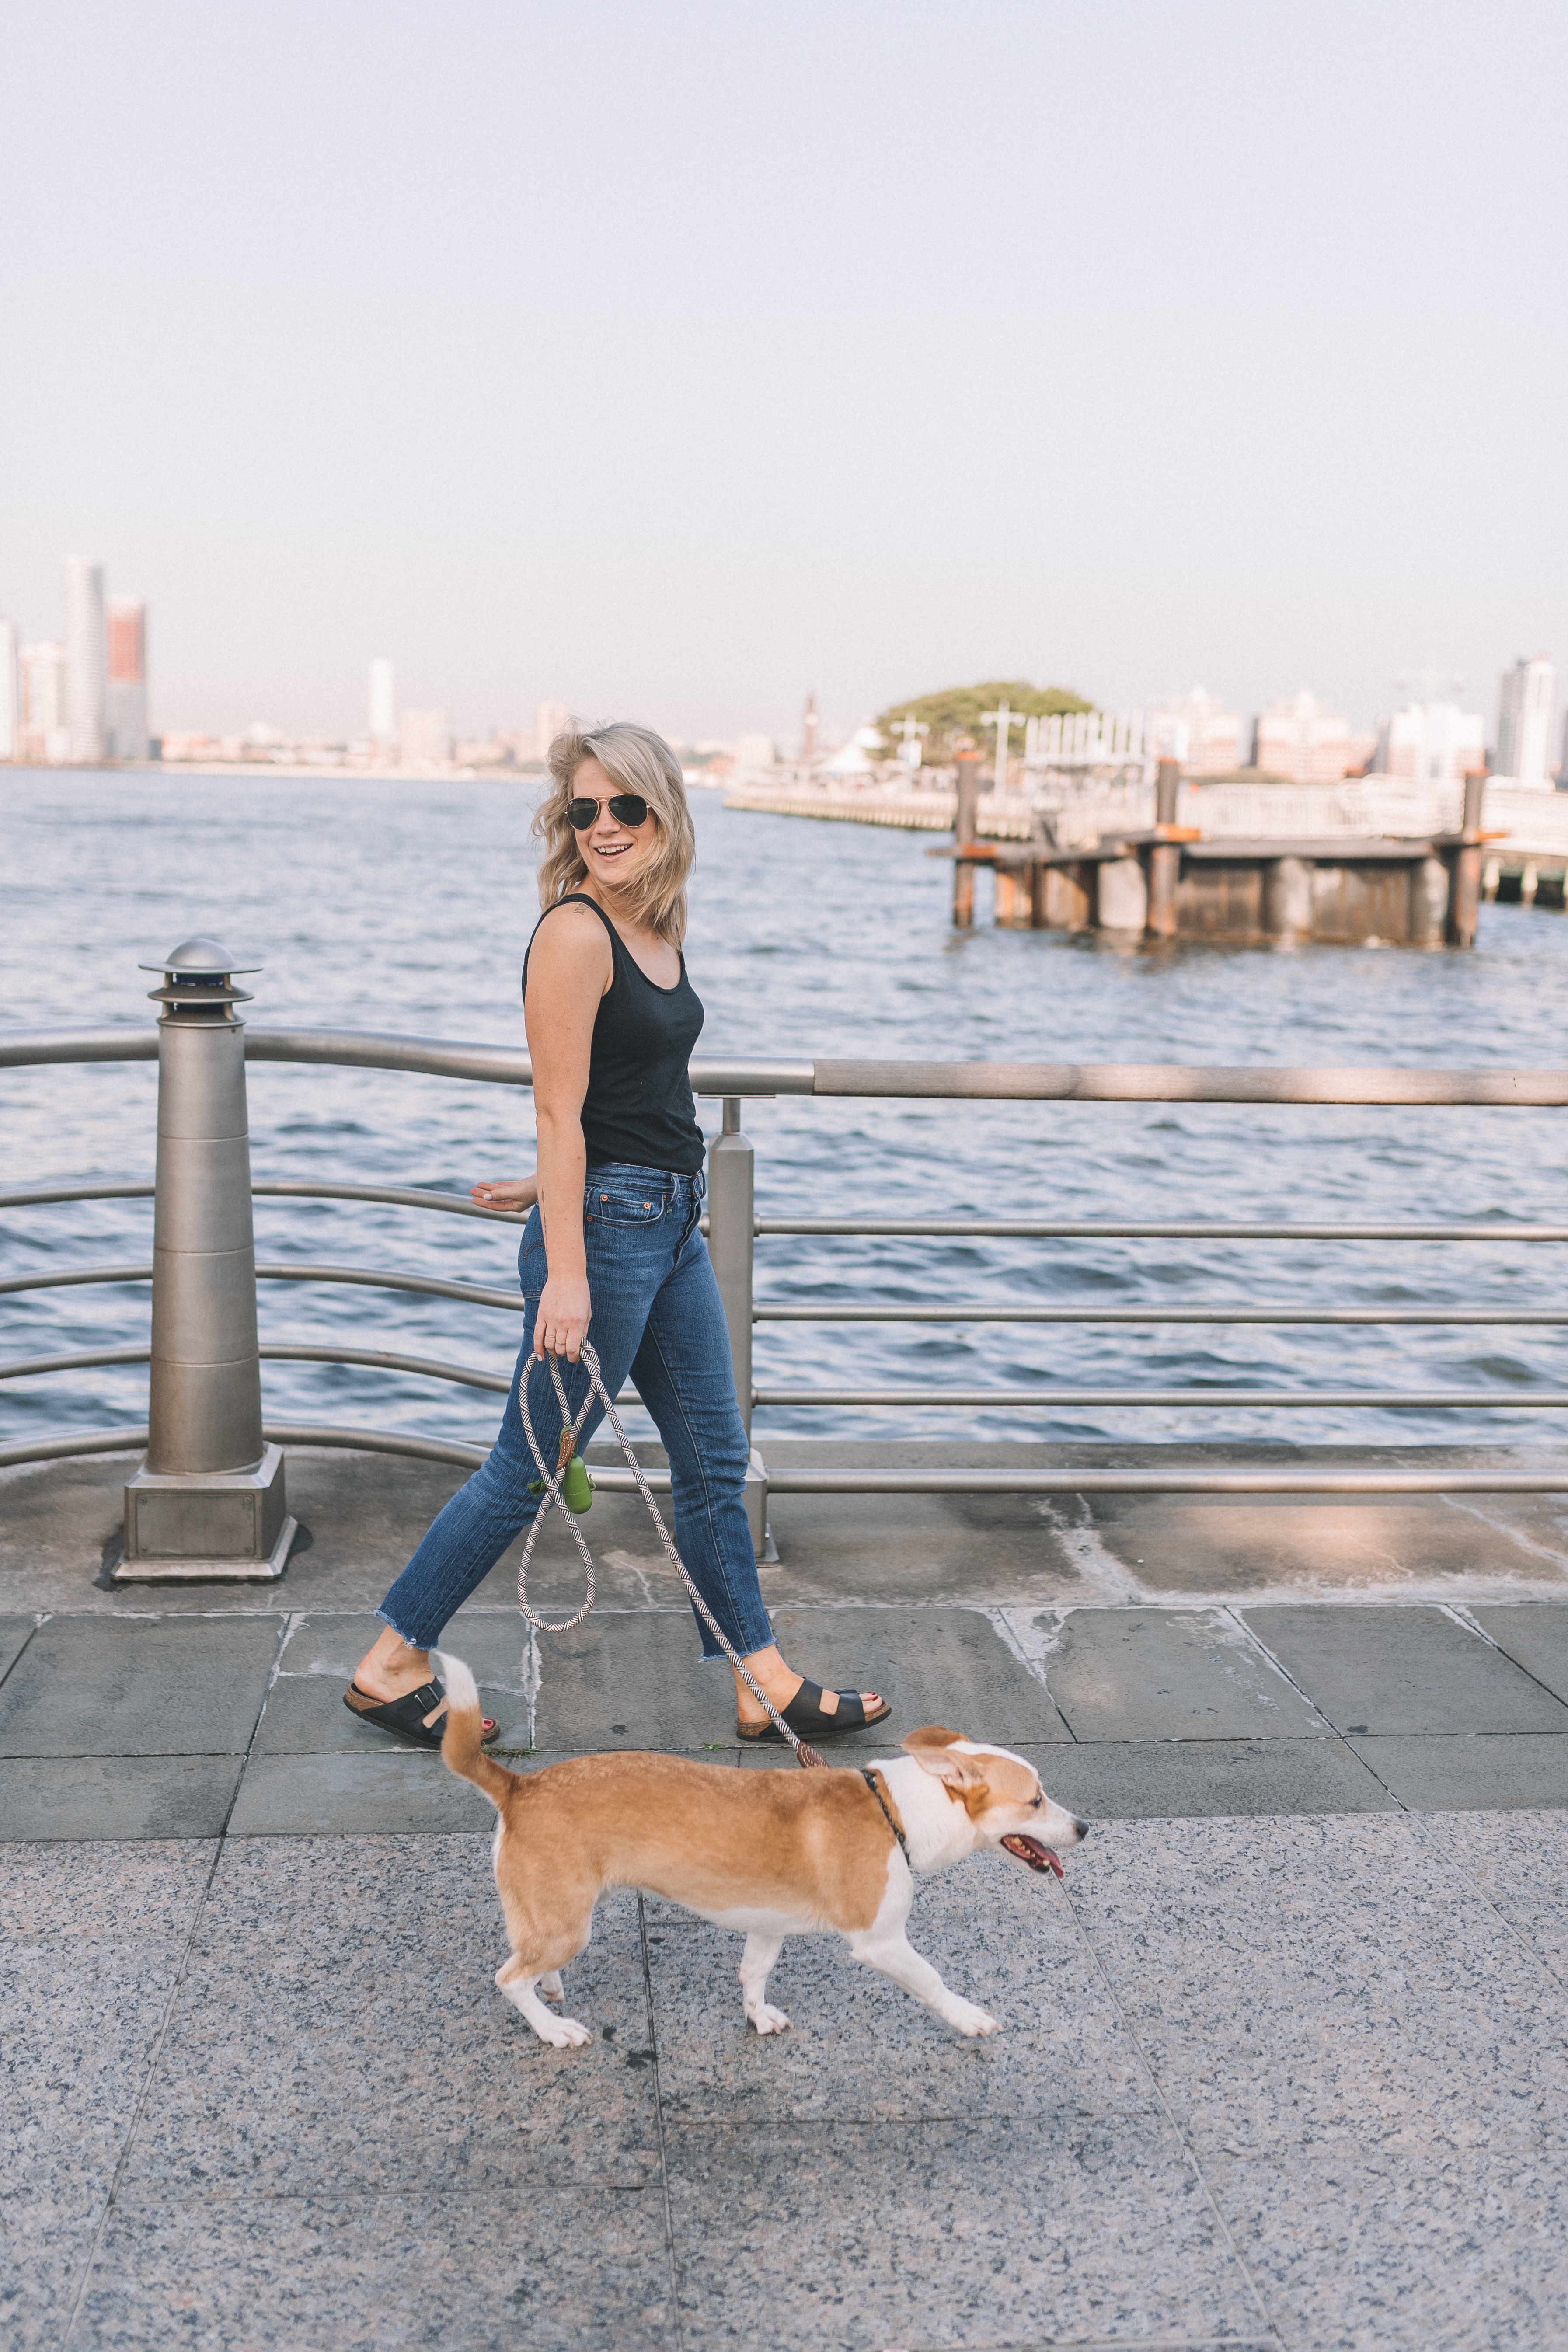 纽约市最受欢迎的狗友好景点。manbet网页版登录